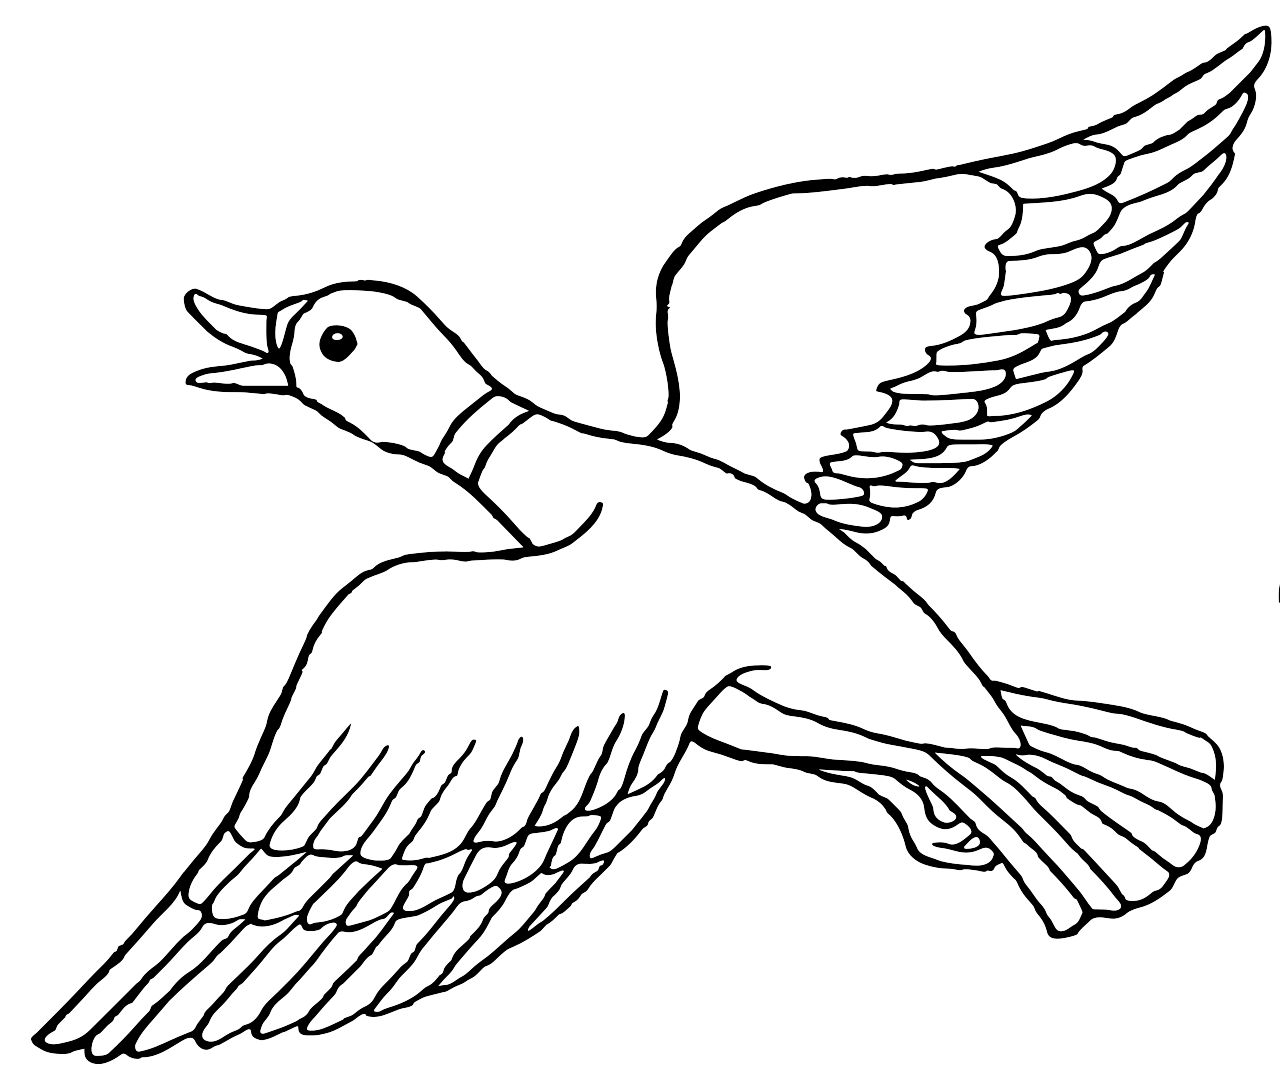 Omalovánka letící kachna k vytisknutí na A4